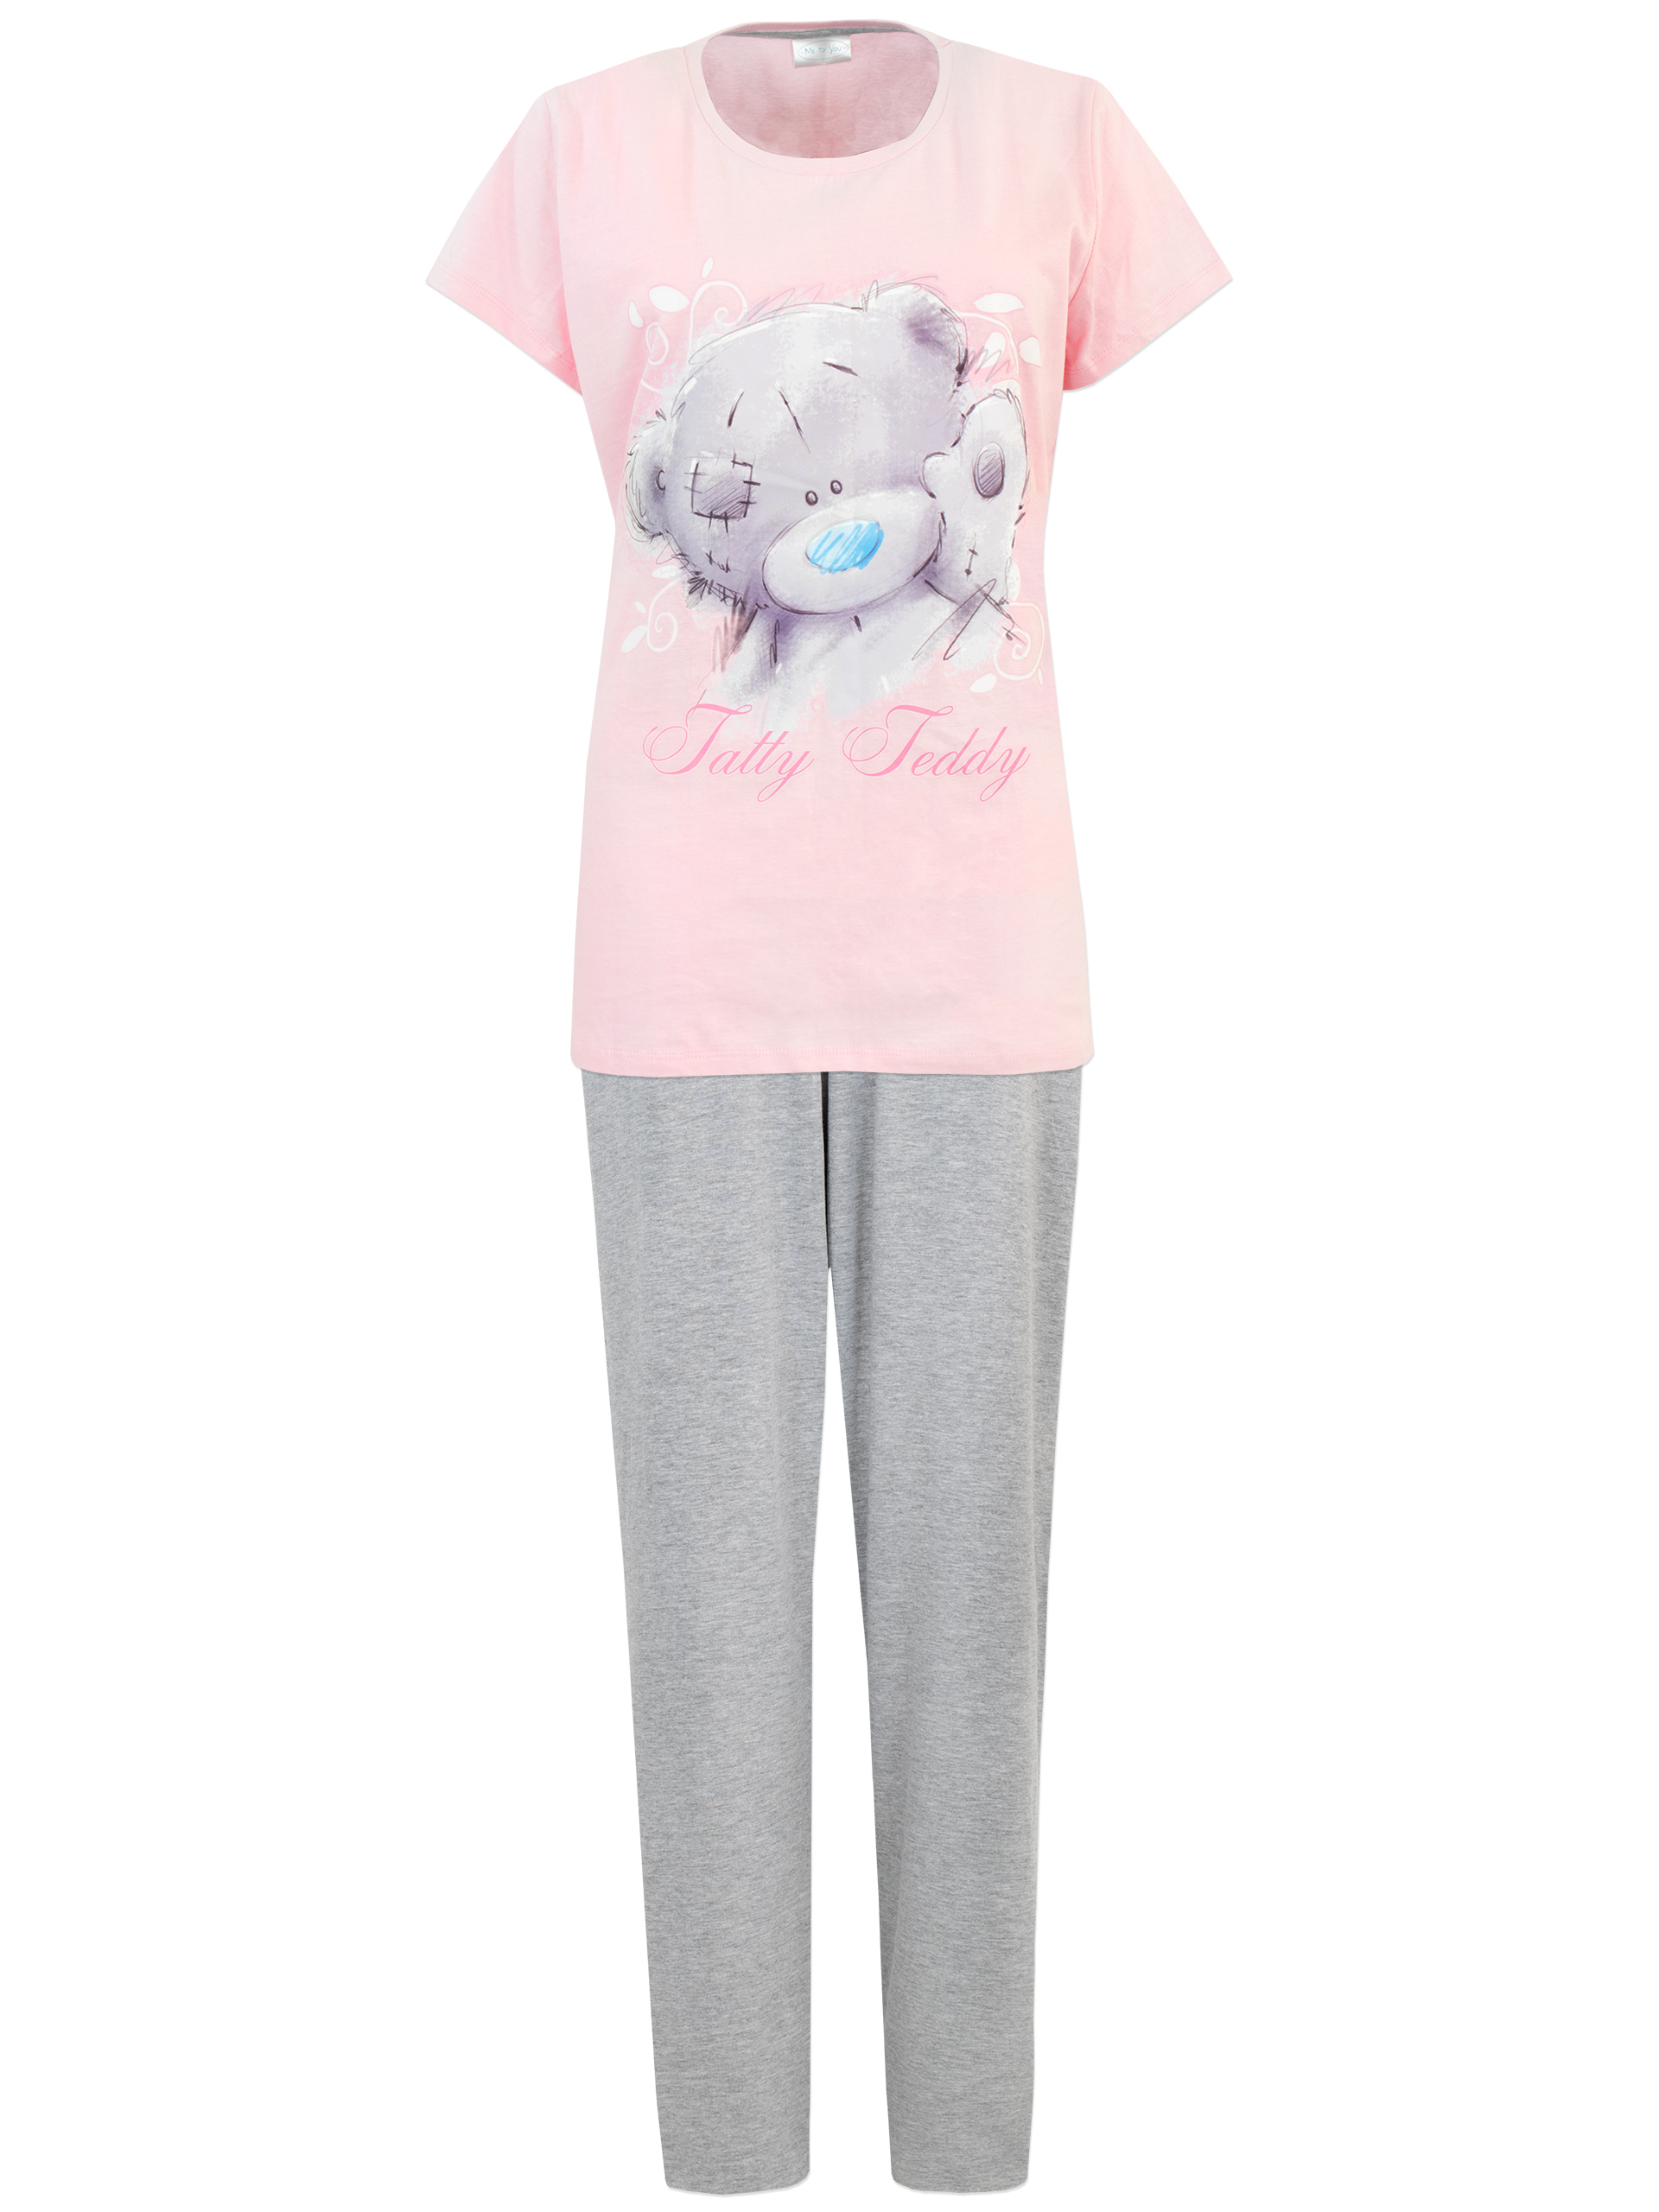 Carte Blanche Womens Tatty Teddy Pajamas Pink Sizes S-XXL - image 1 of 3